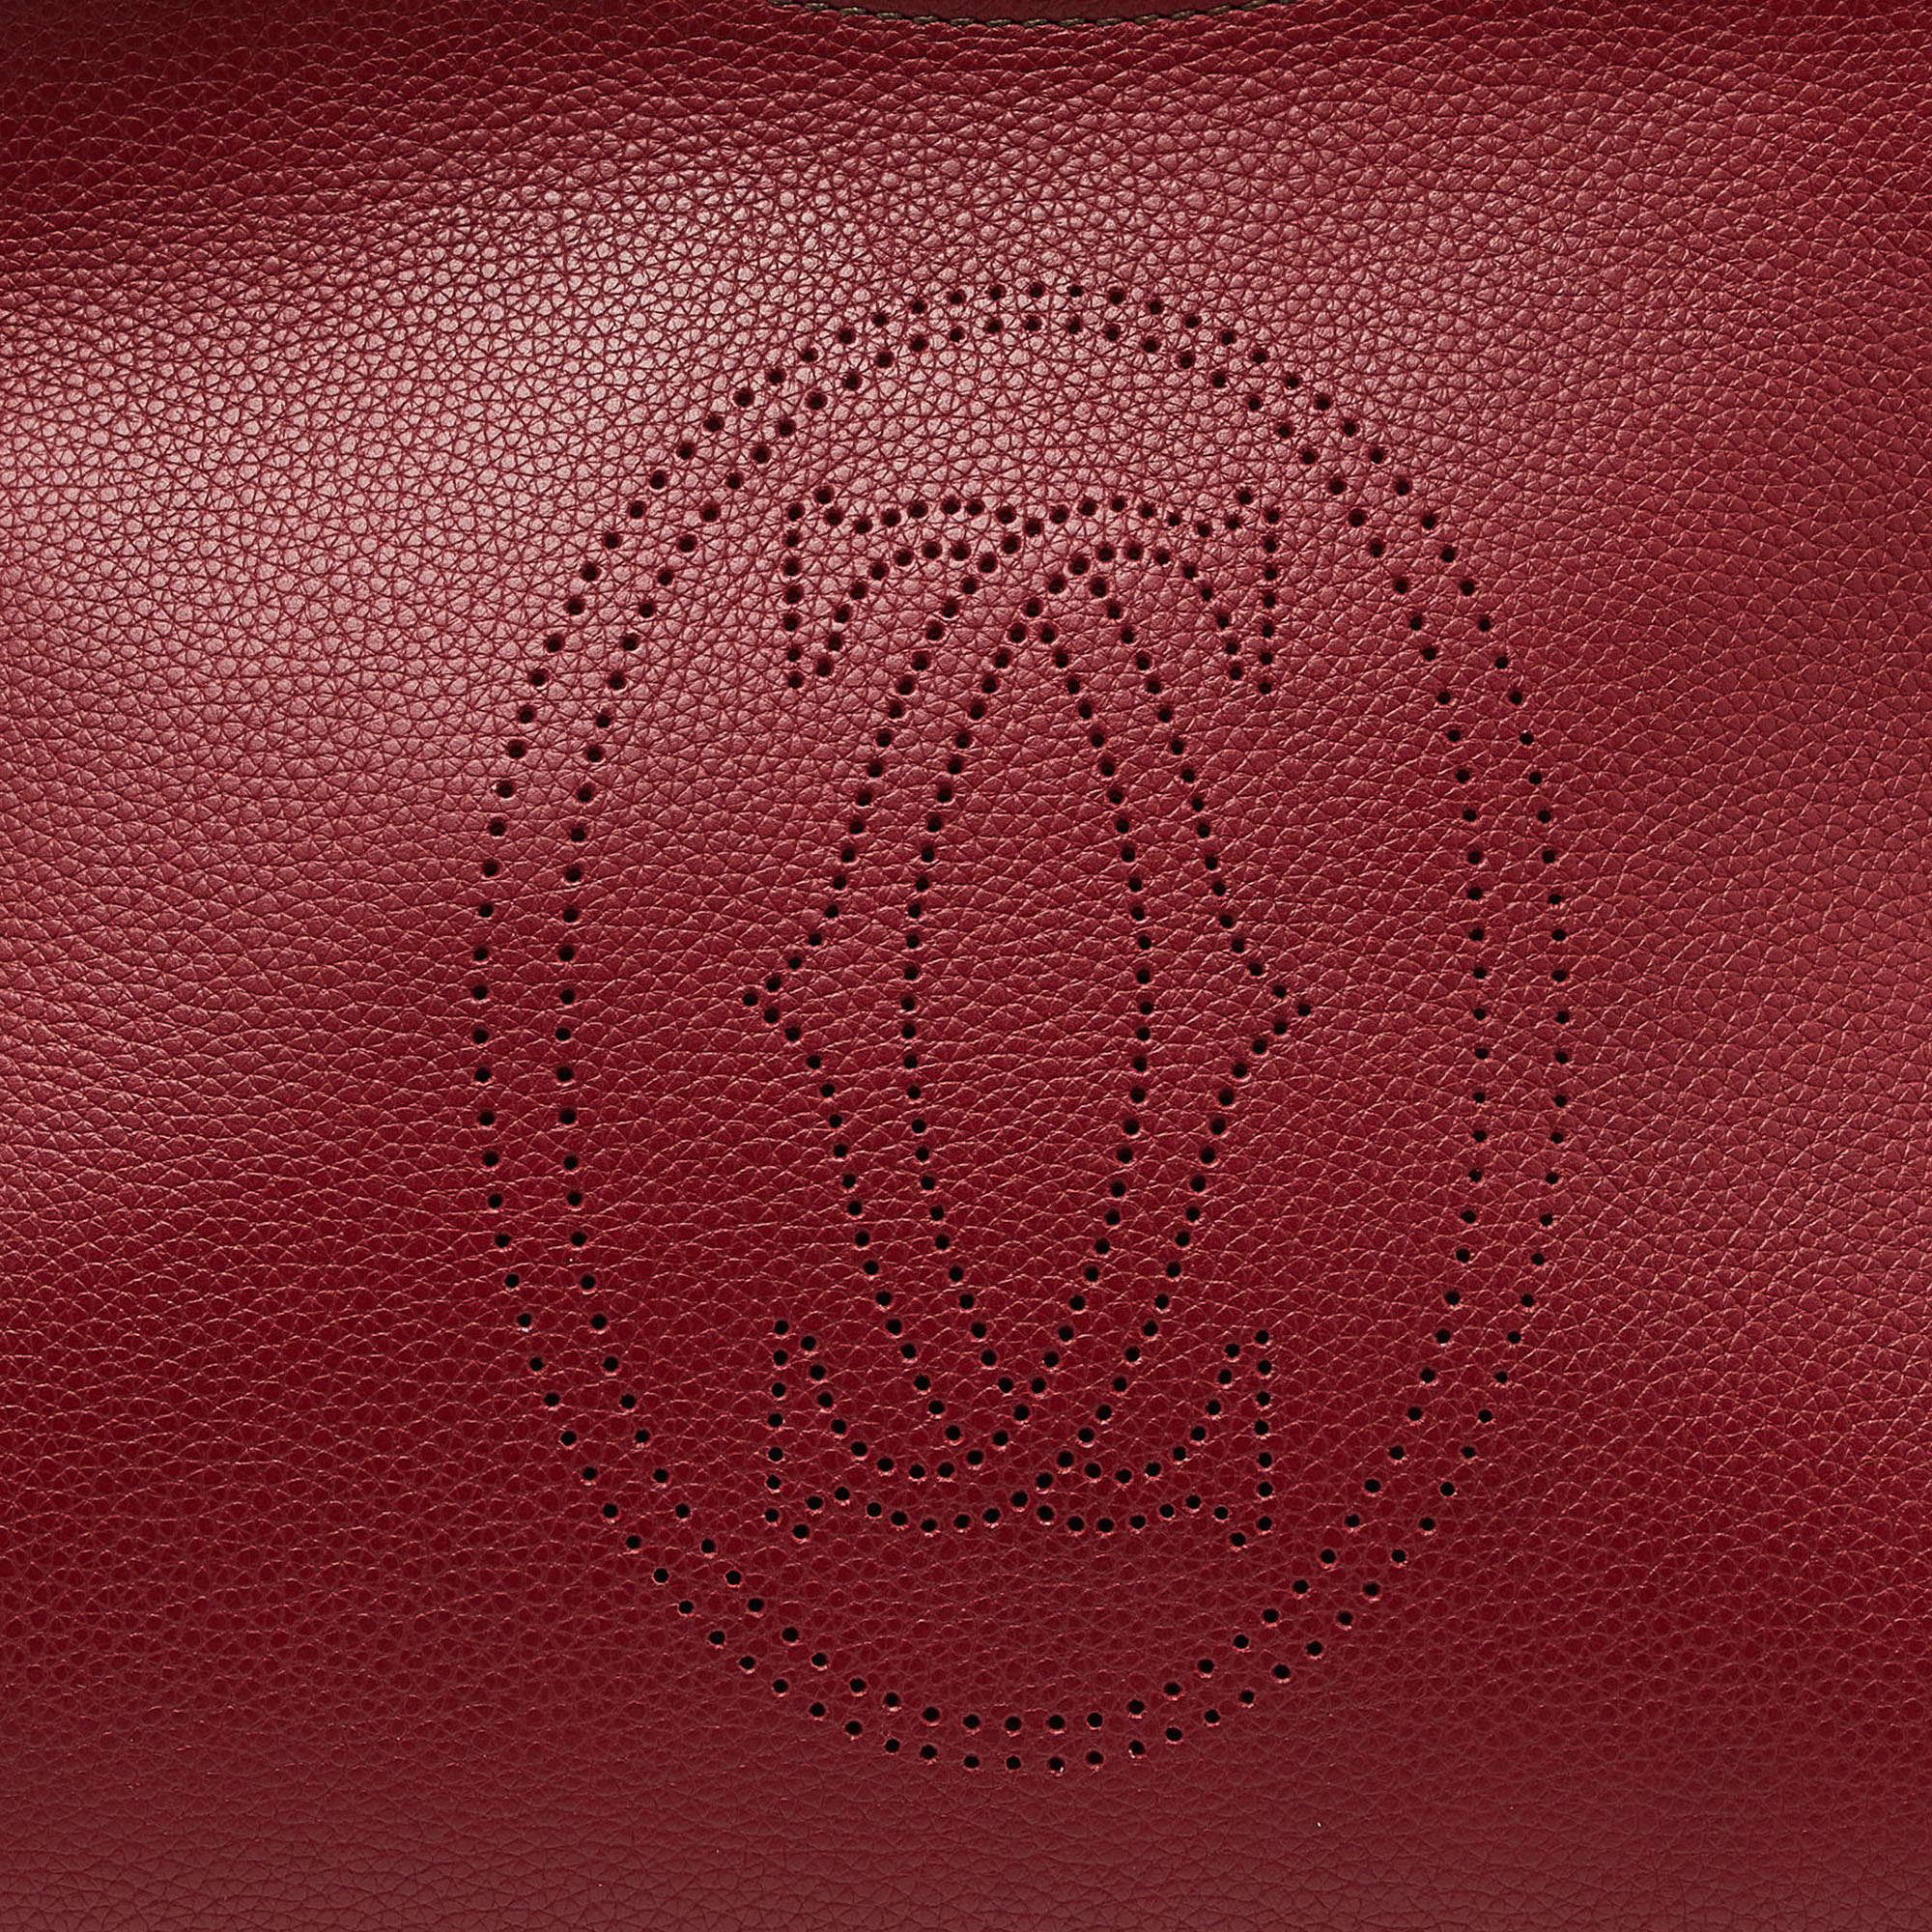 Cartier Red Leather Medium Marcello De Cartier Bag